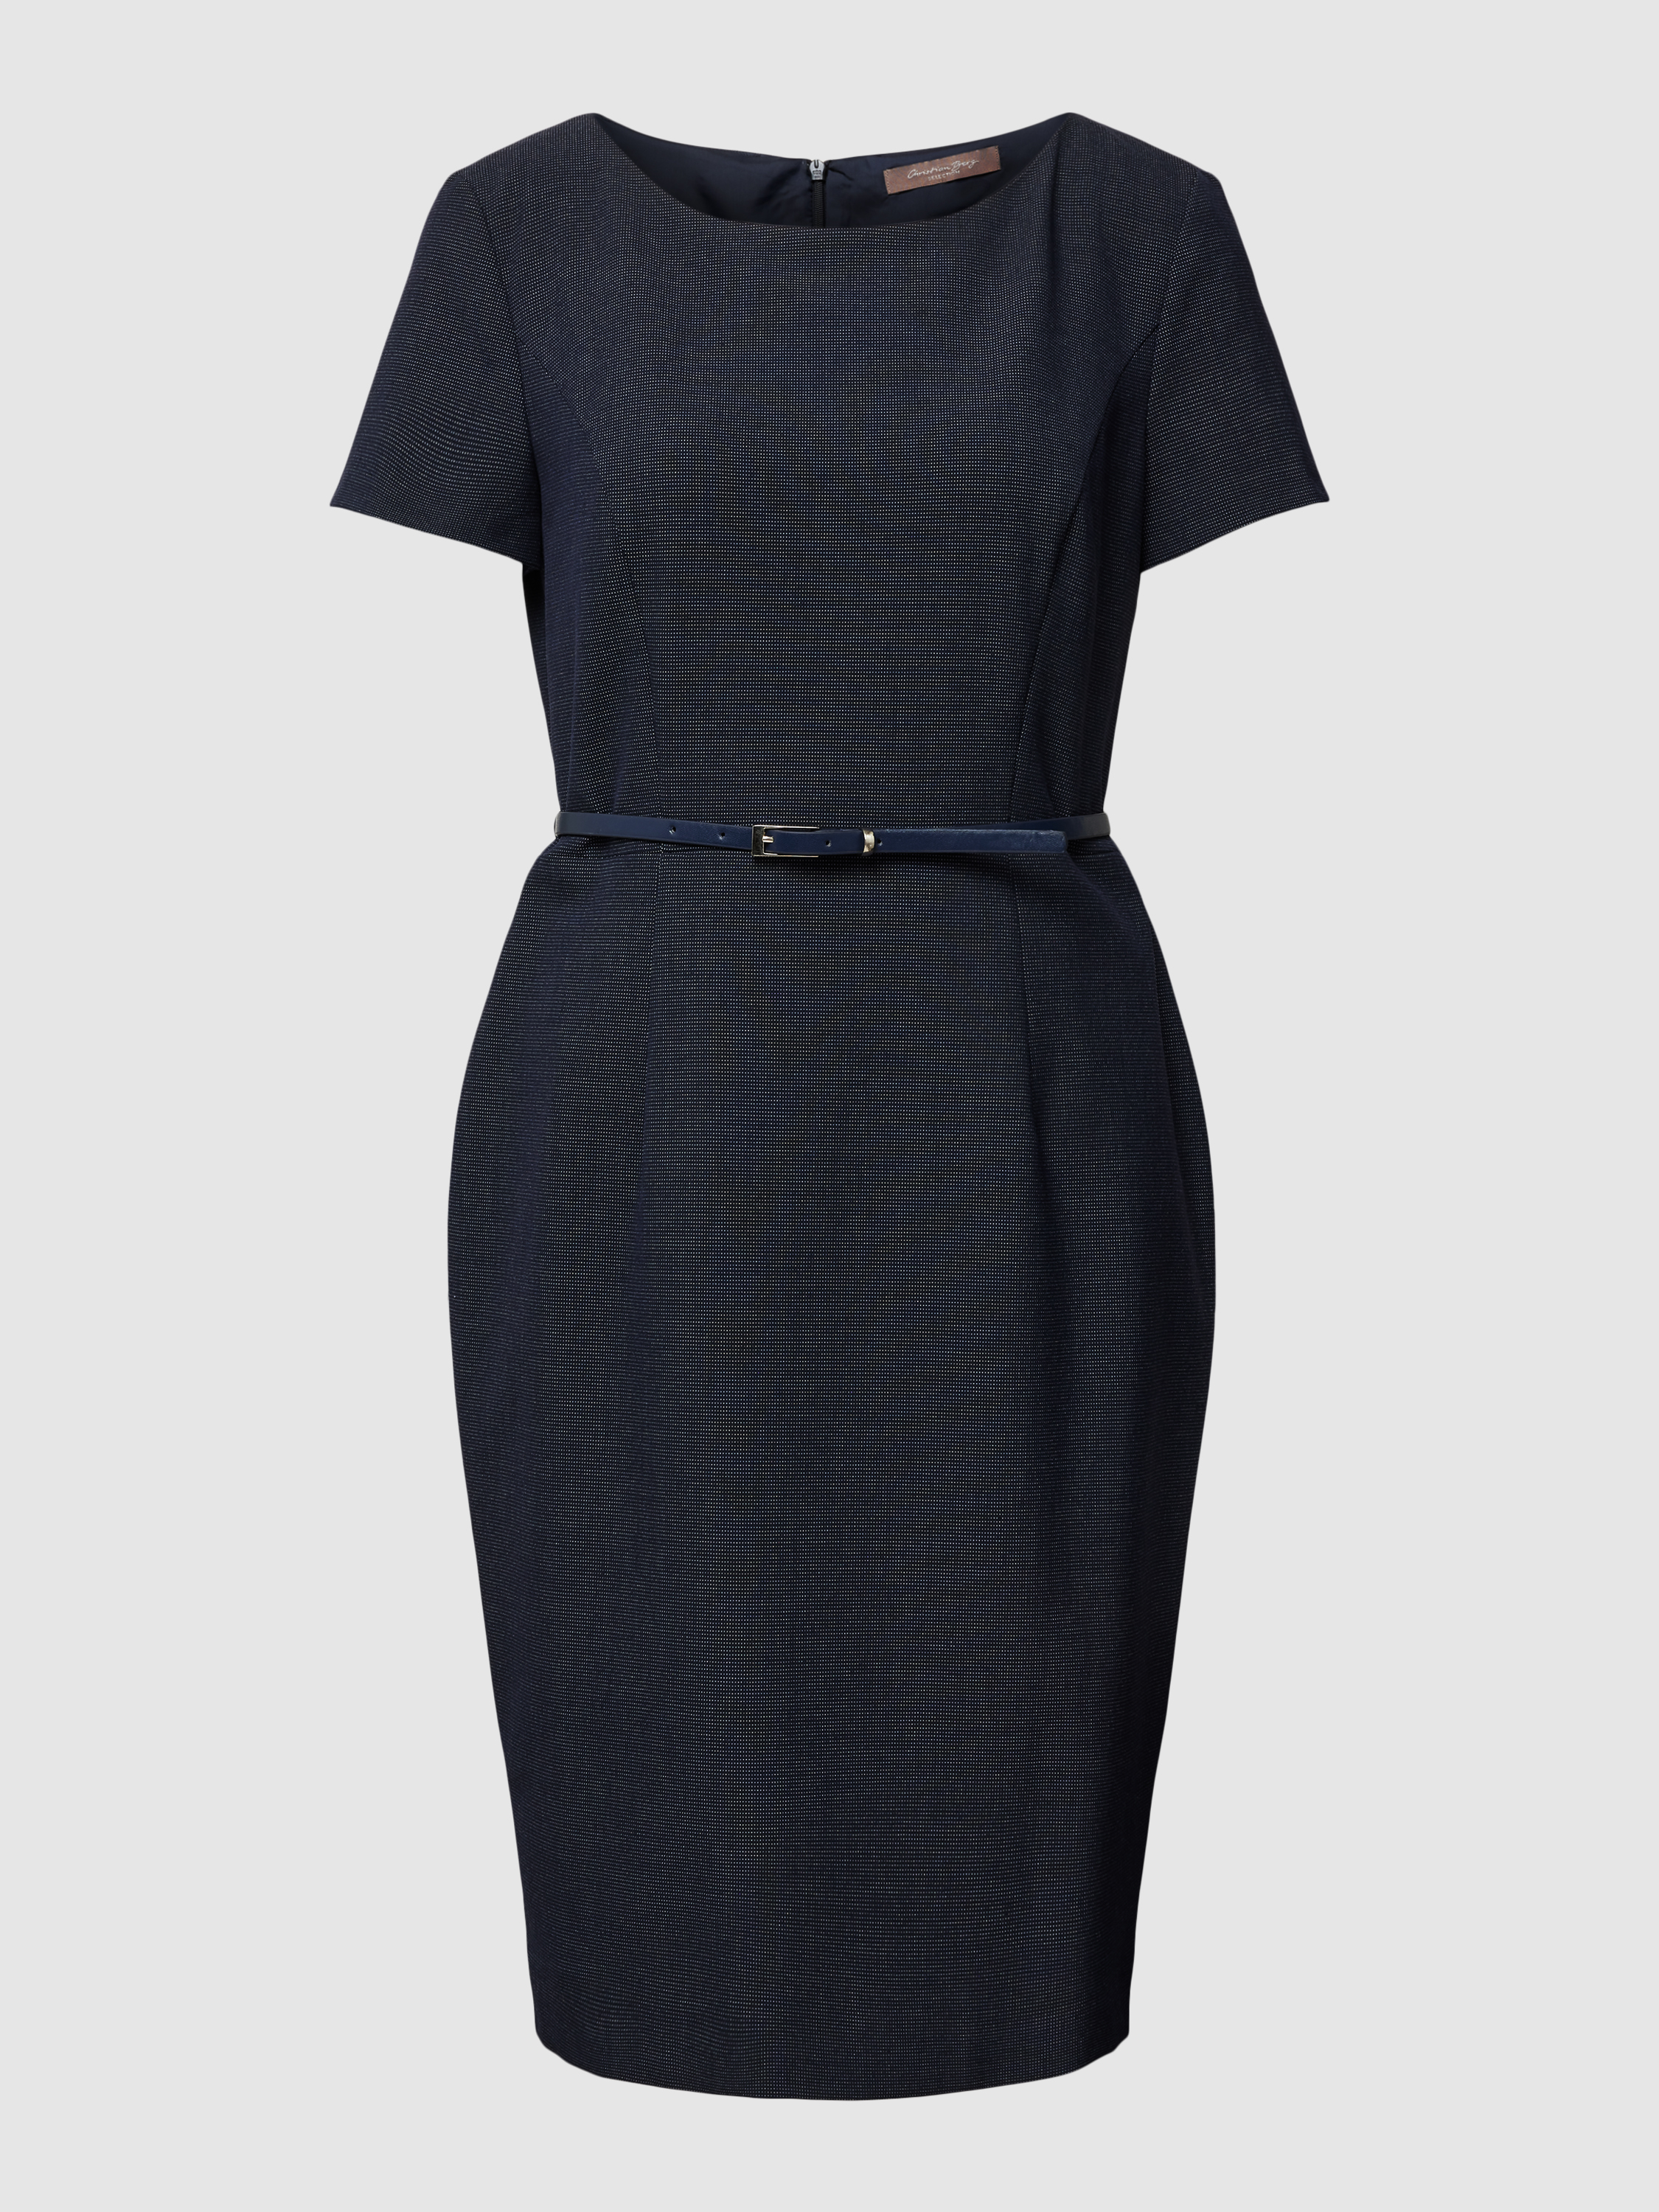 Платье женское Christian Berg Woman Selection 1826109 синее 46 (доставка из-за рубежа)